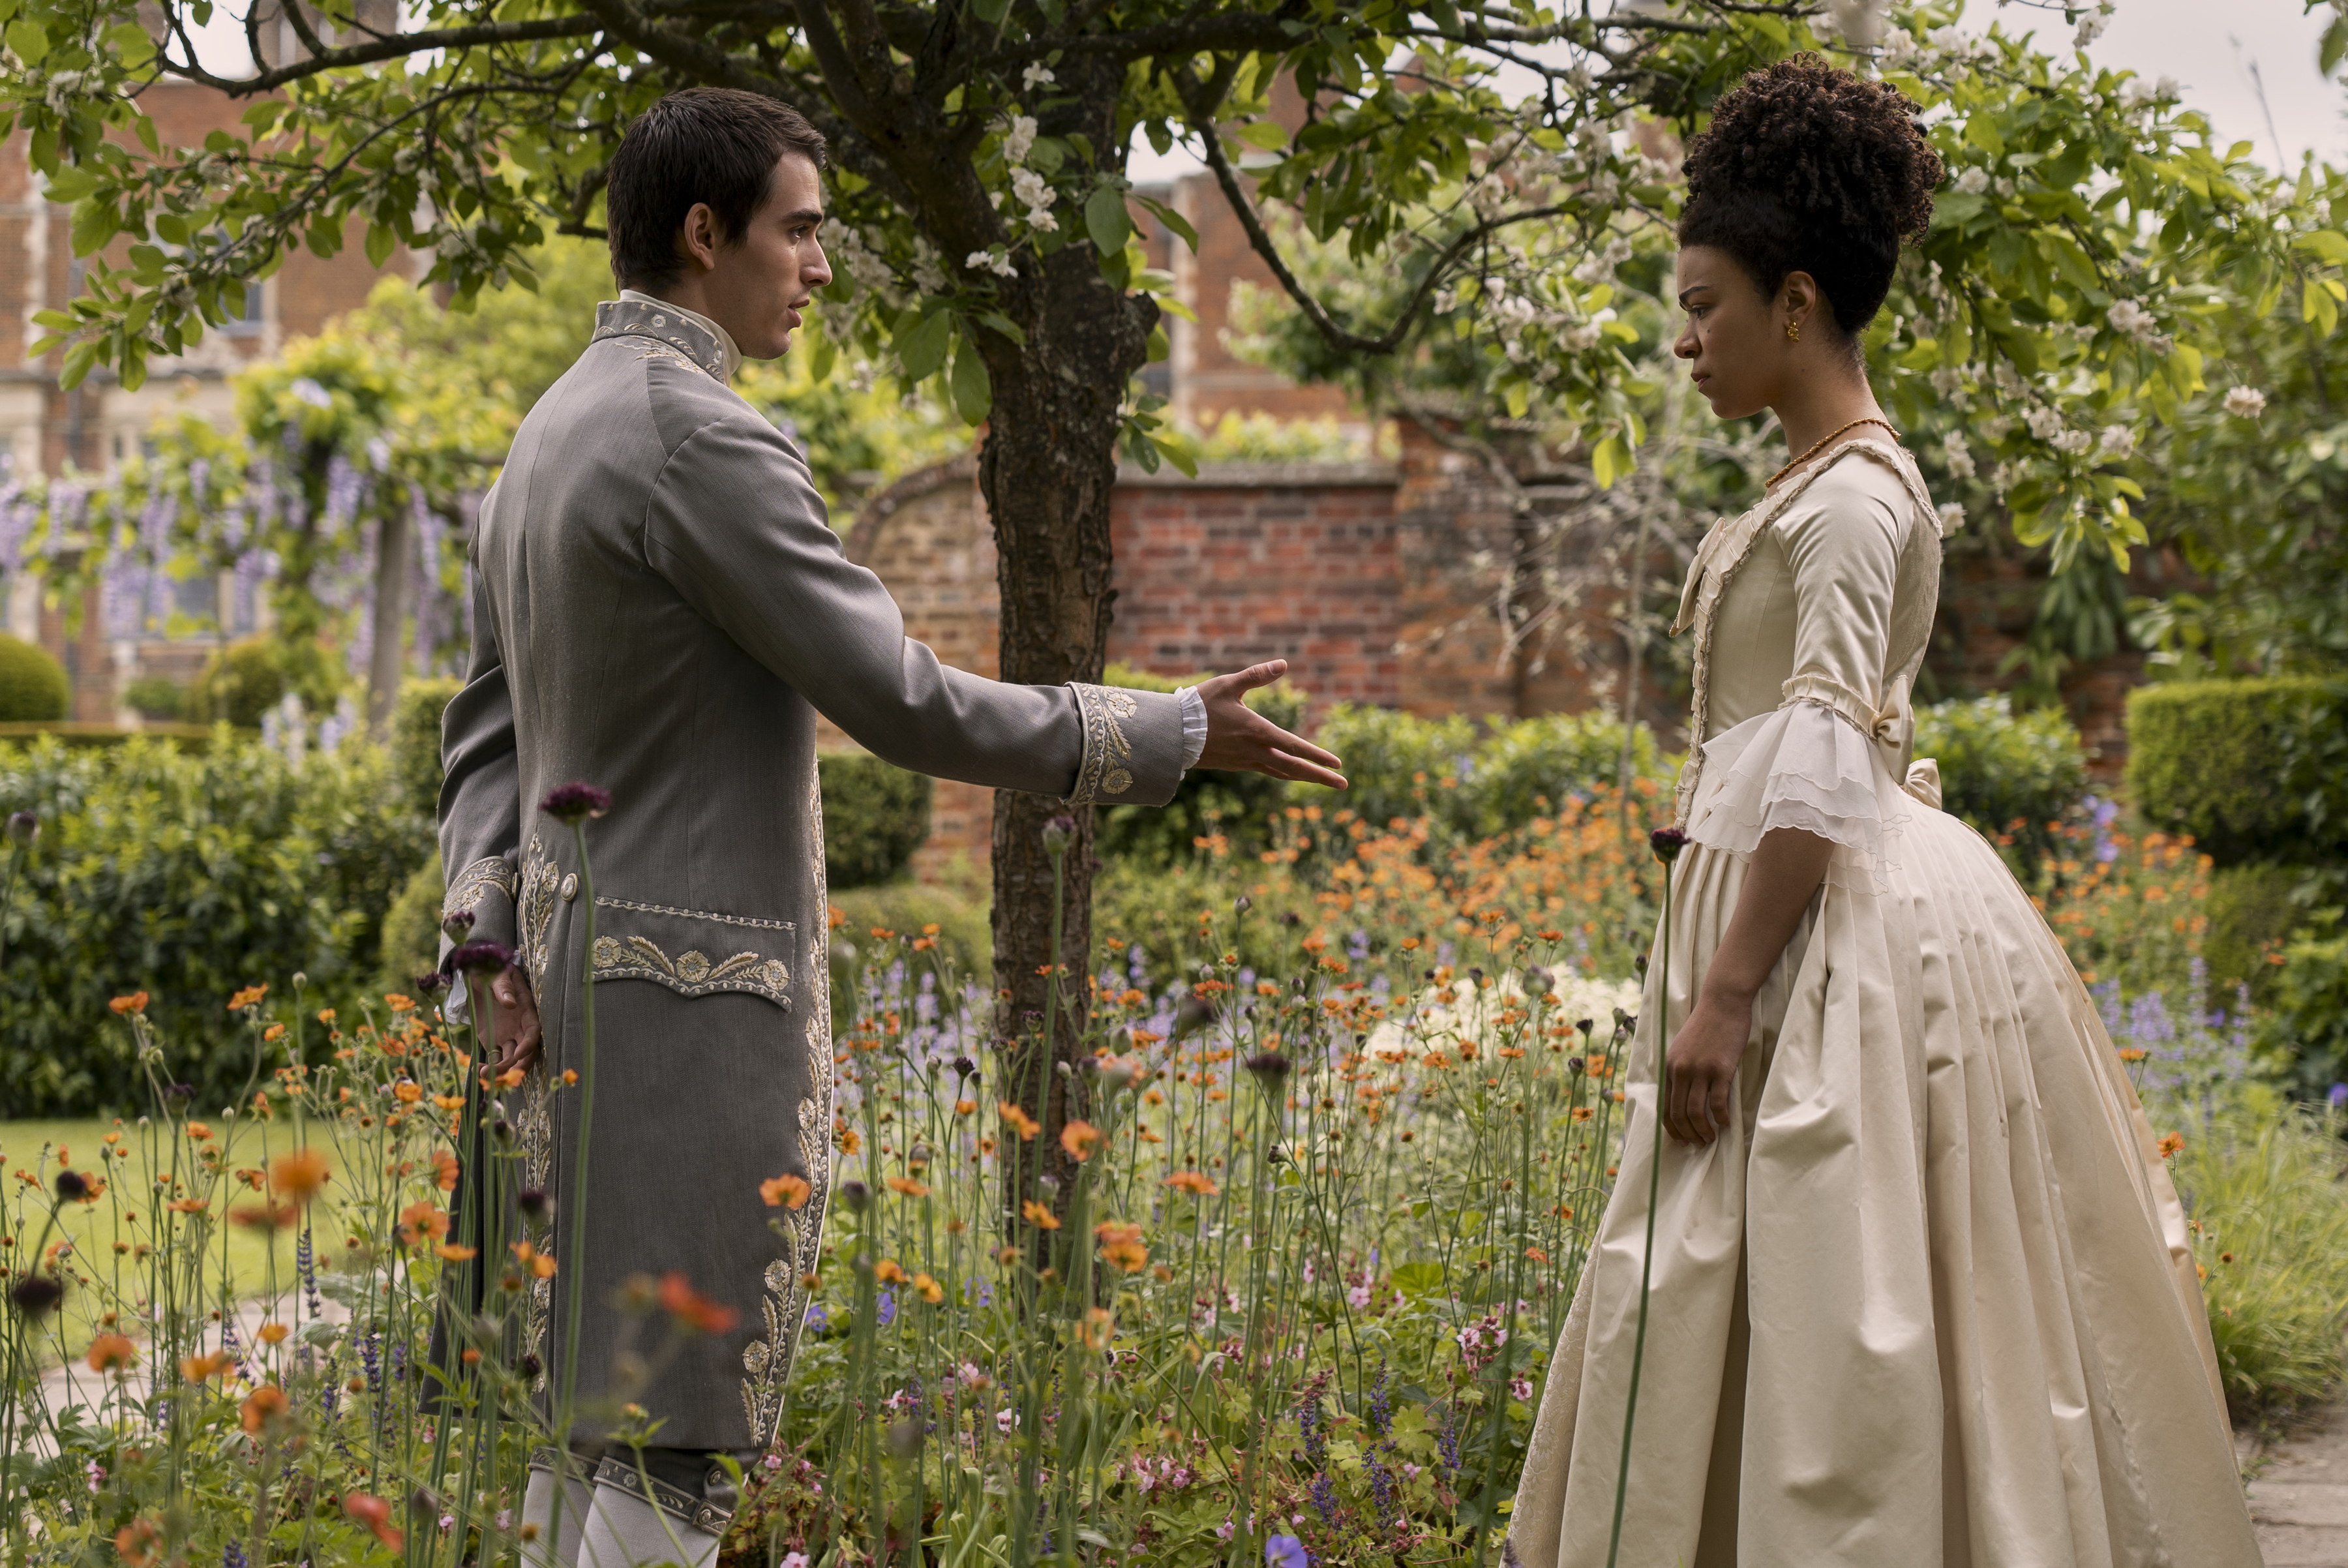 Corey Mylchreest como rei George jovem e India Amarteifio como rainha Charlotte jovem; os dois estão se encarando enquanto em pé em um jardim durante o dia enquanto ele estende a mão para ela